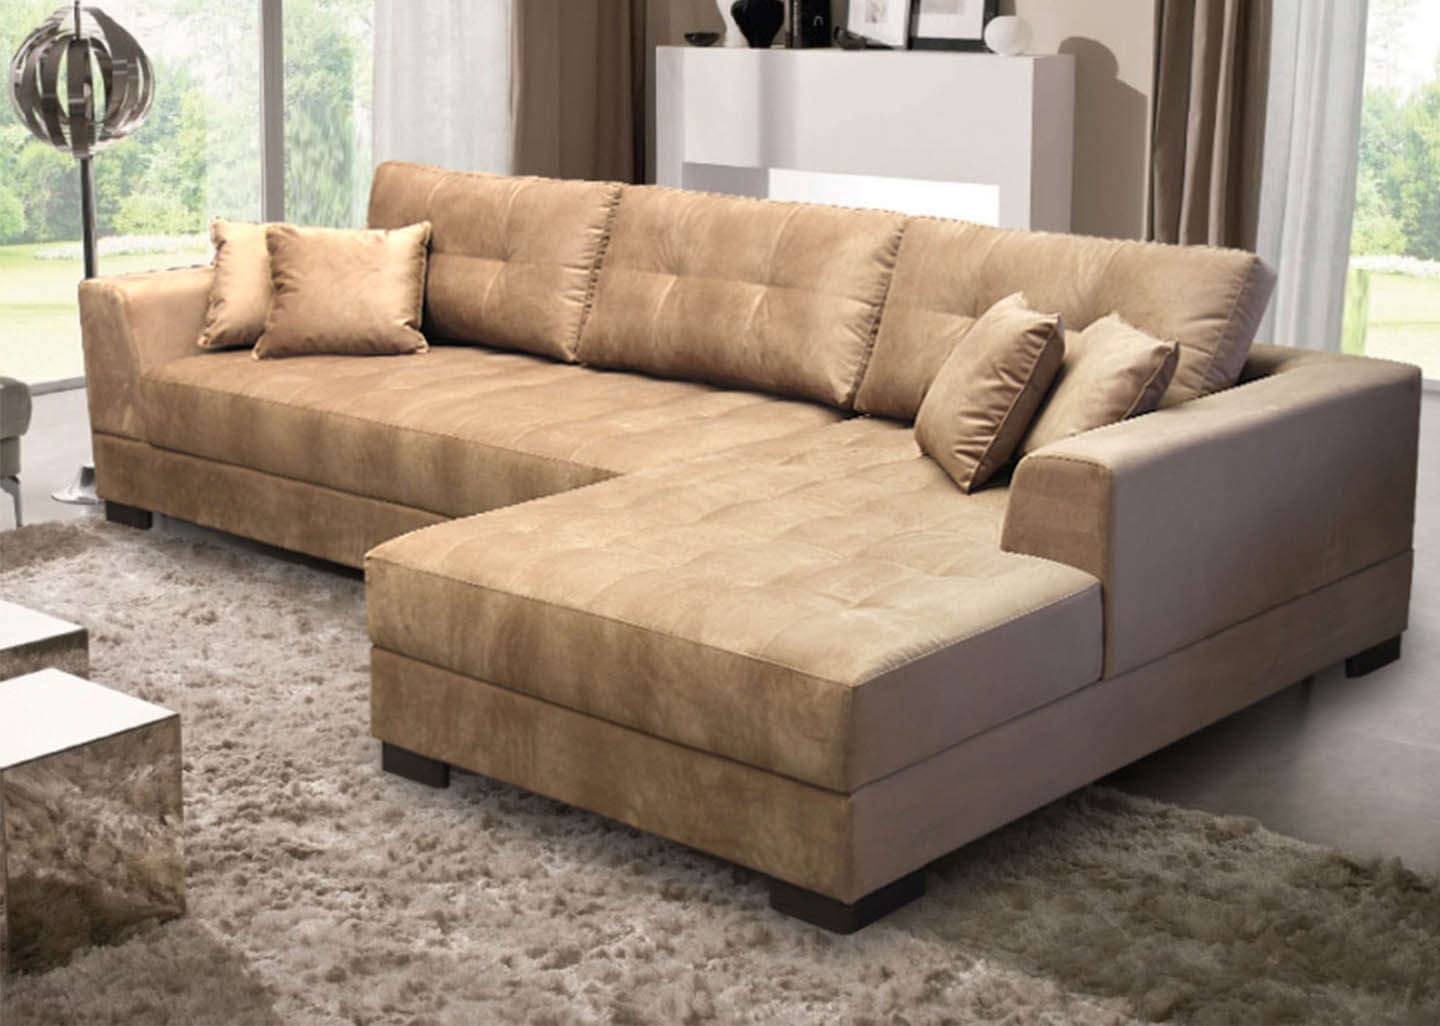 O melhor sofá de canto é capaz de fornecer conforto e versatilidade aos ambientes.